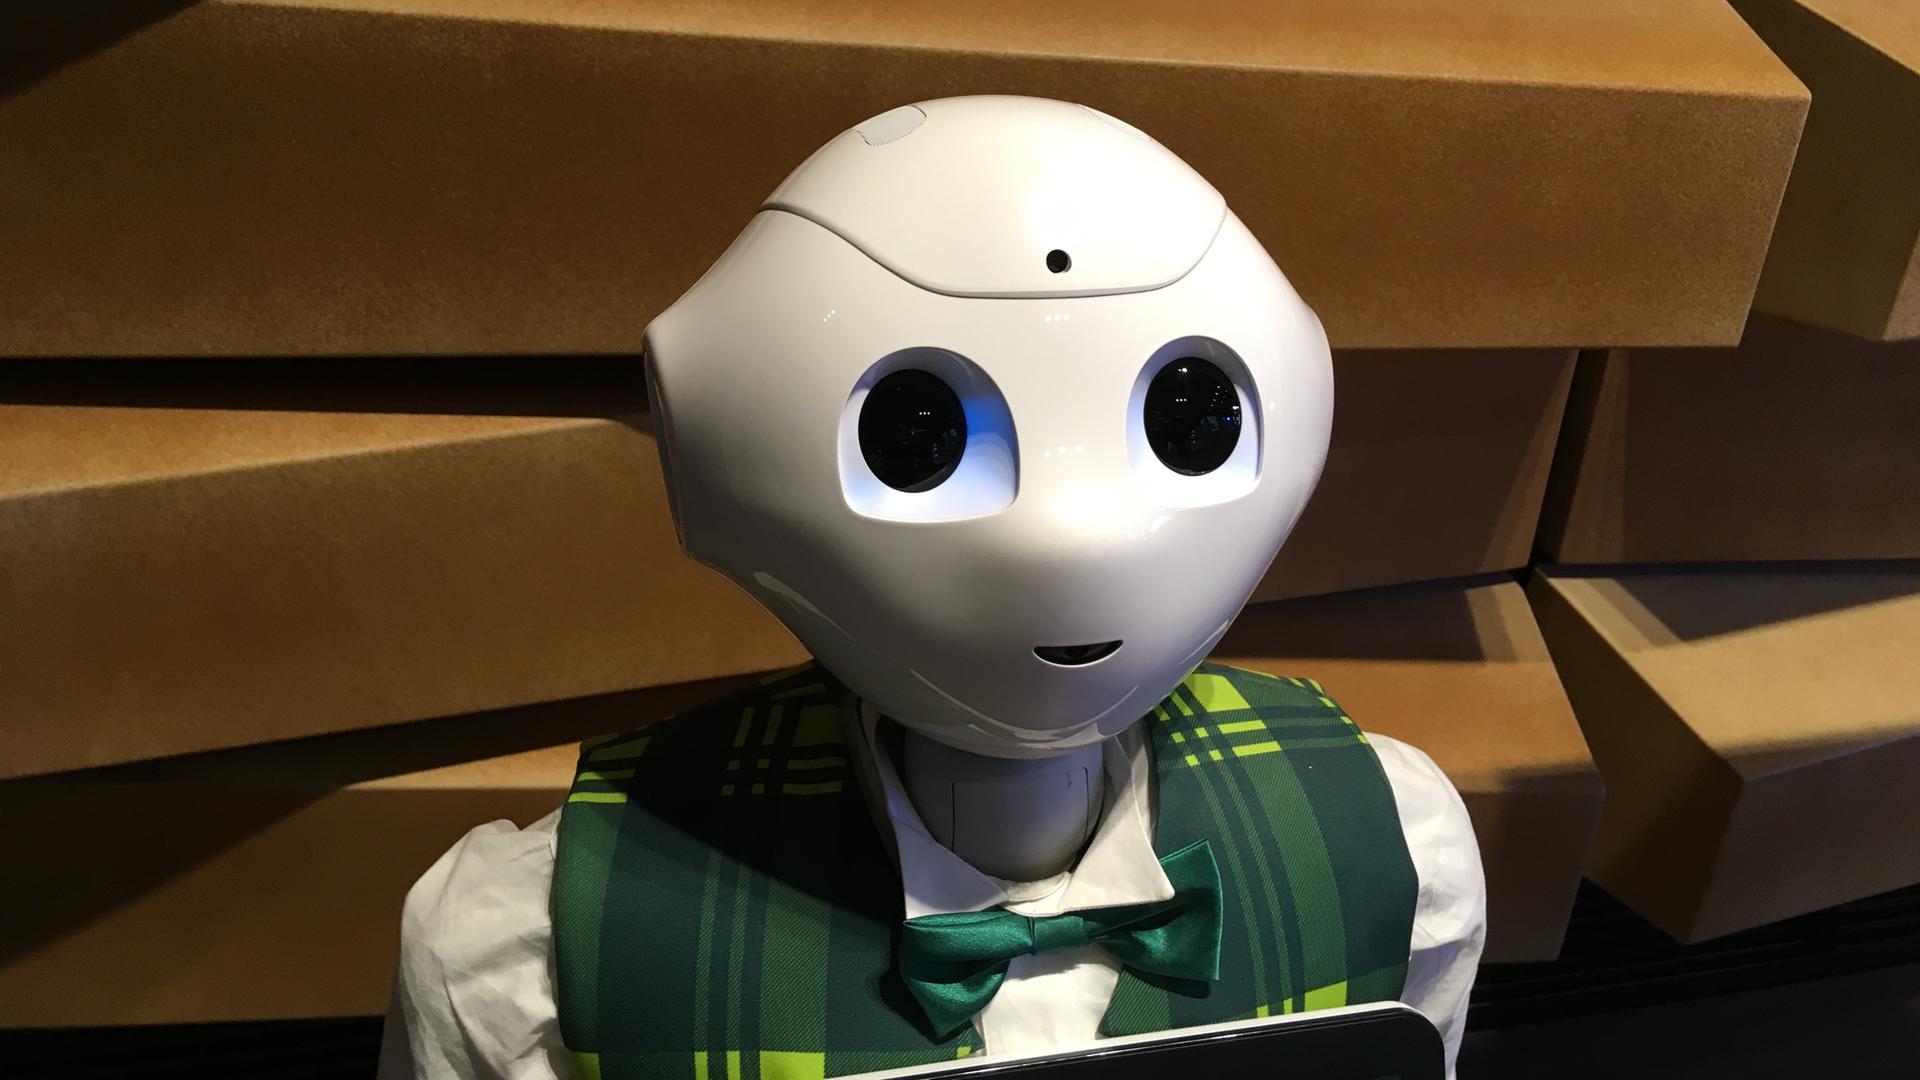 Kopf und Schultern des humanoiden Roboters "Pepper": glatte weiße Oberfläche, sehr große Augen, eine angedeutete Nase und ein kleiner lächelnder Mund. Er trägt eine karierte Weste und eine Fliege.